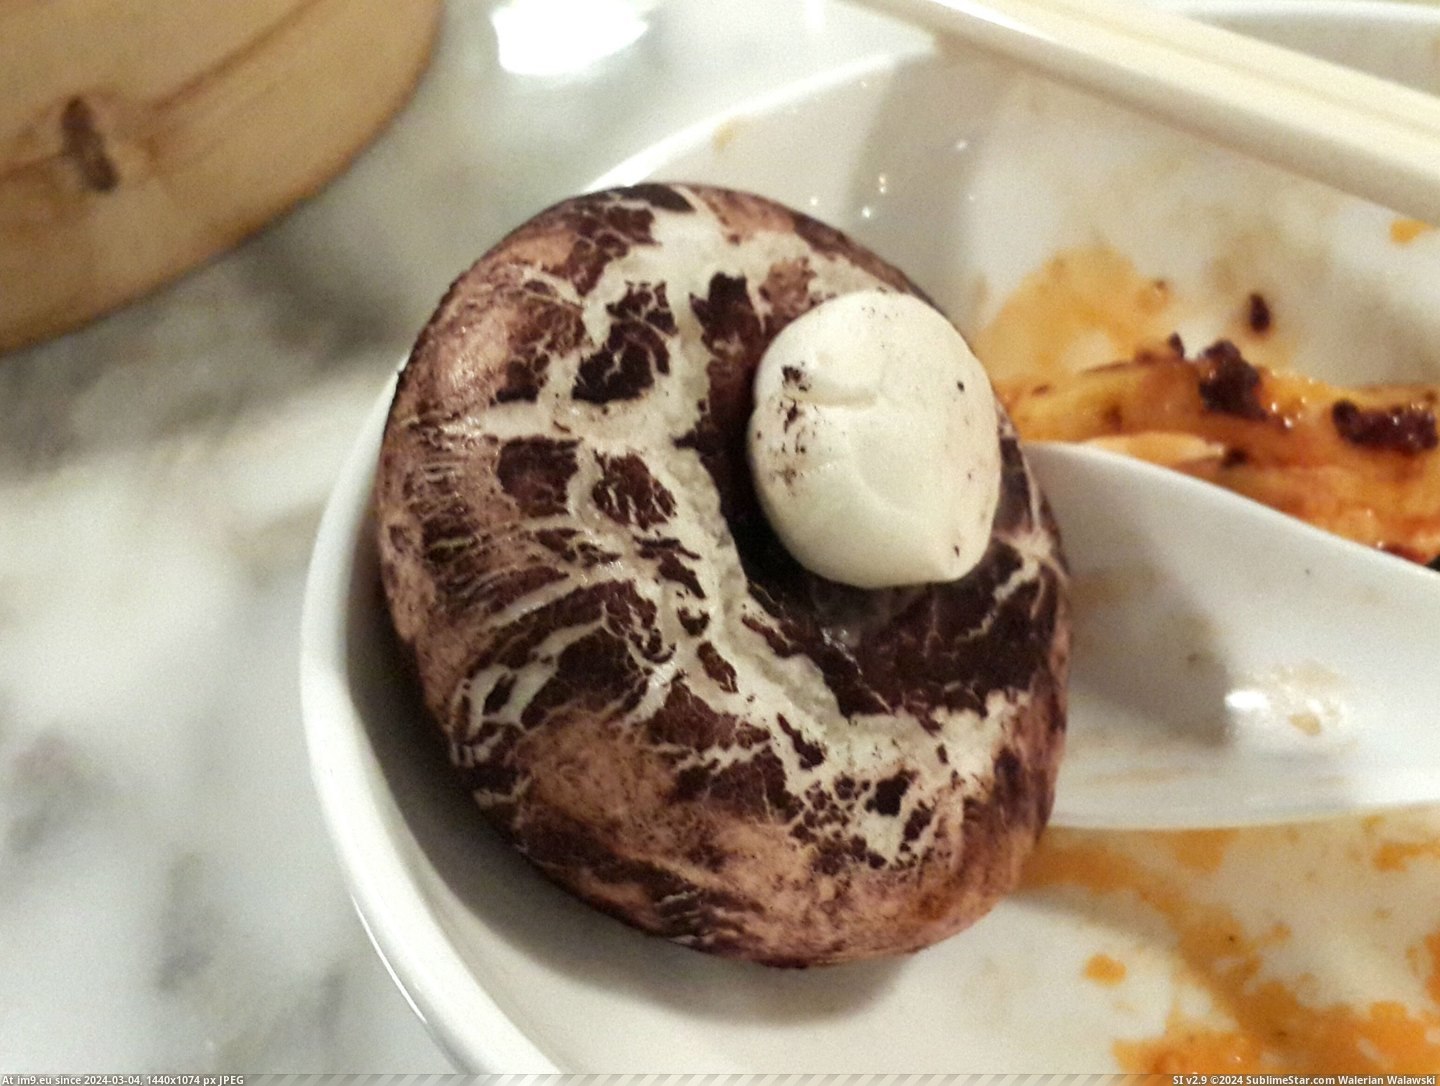 #Real #Mushroom #Buns #Mushrooms [Mildlyinteresting] Mushroom steamed buns that look like real mushrooms 1 Pic. (Image of album My r/MILDLYINTERESTING favs))